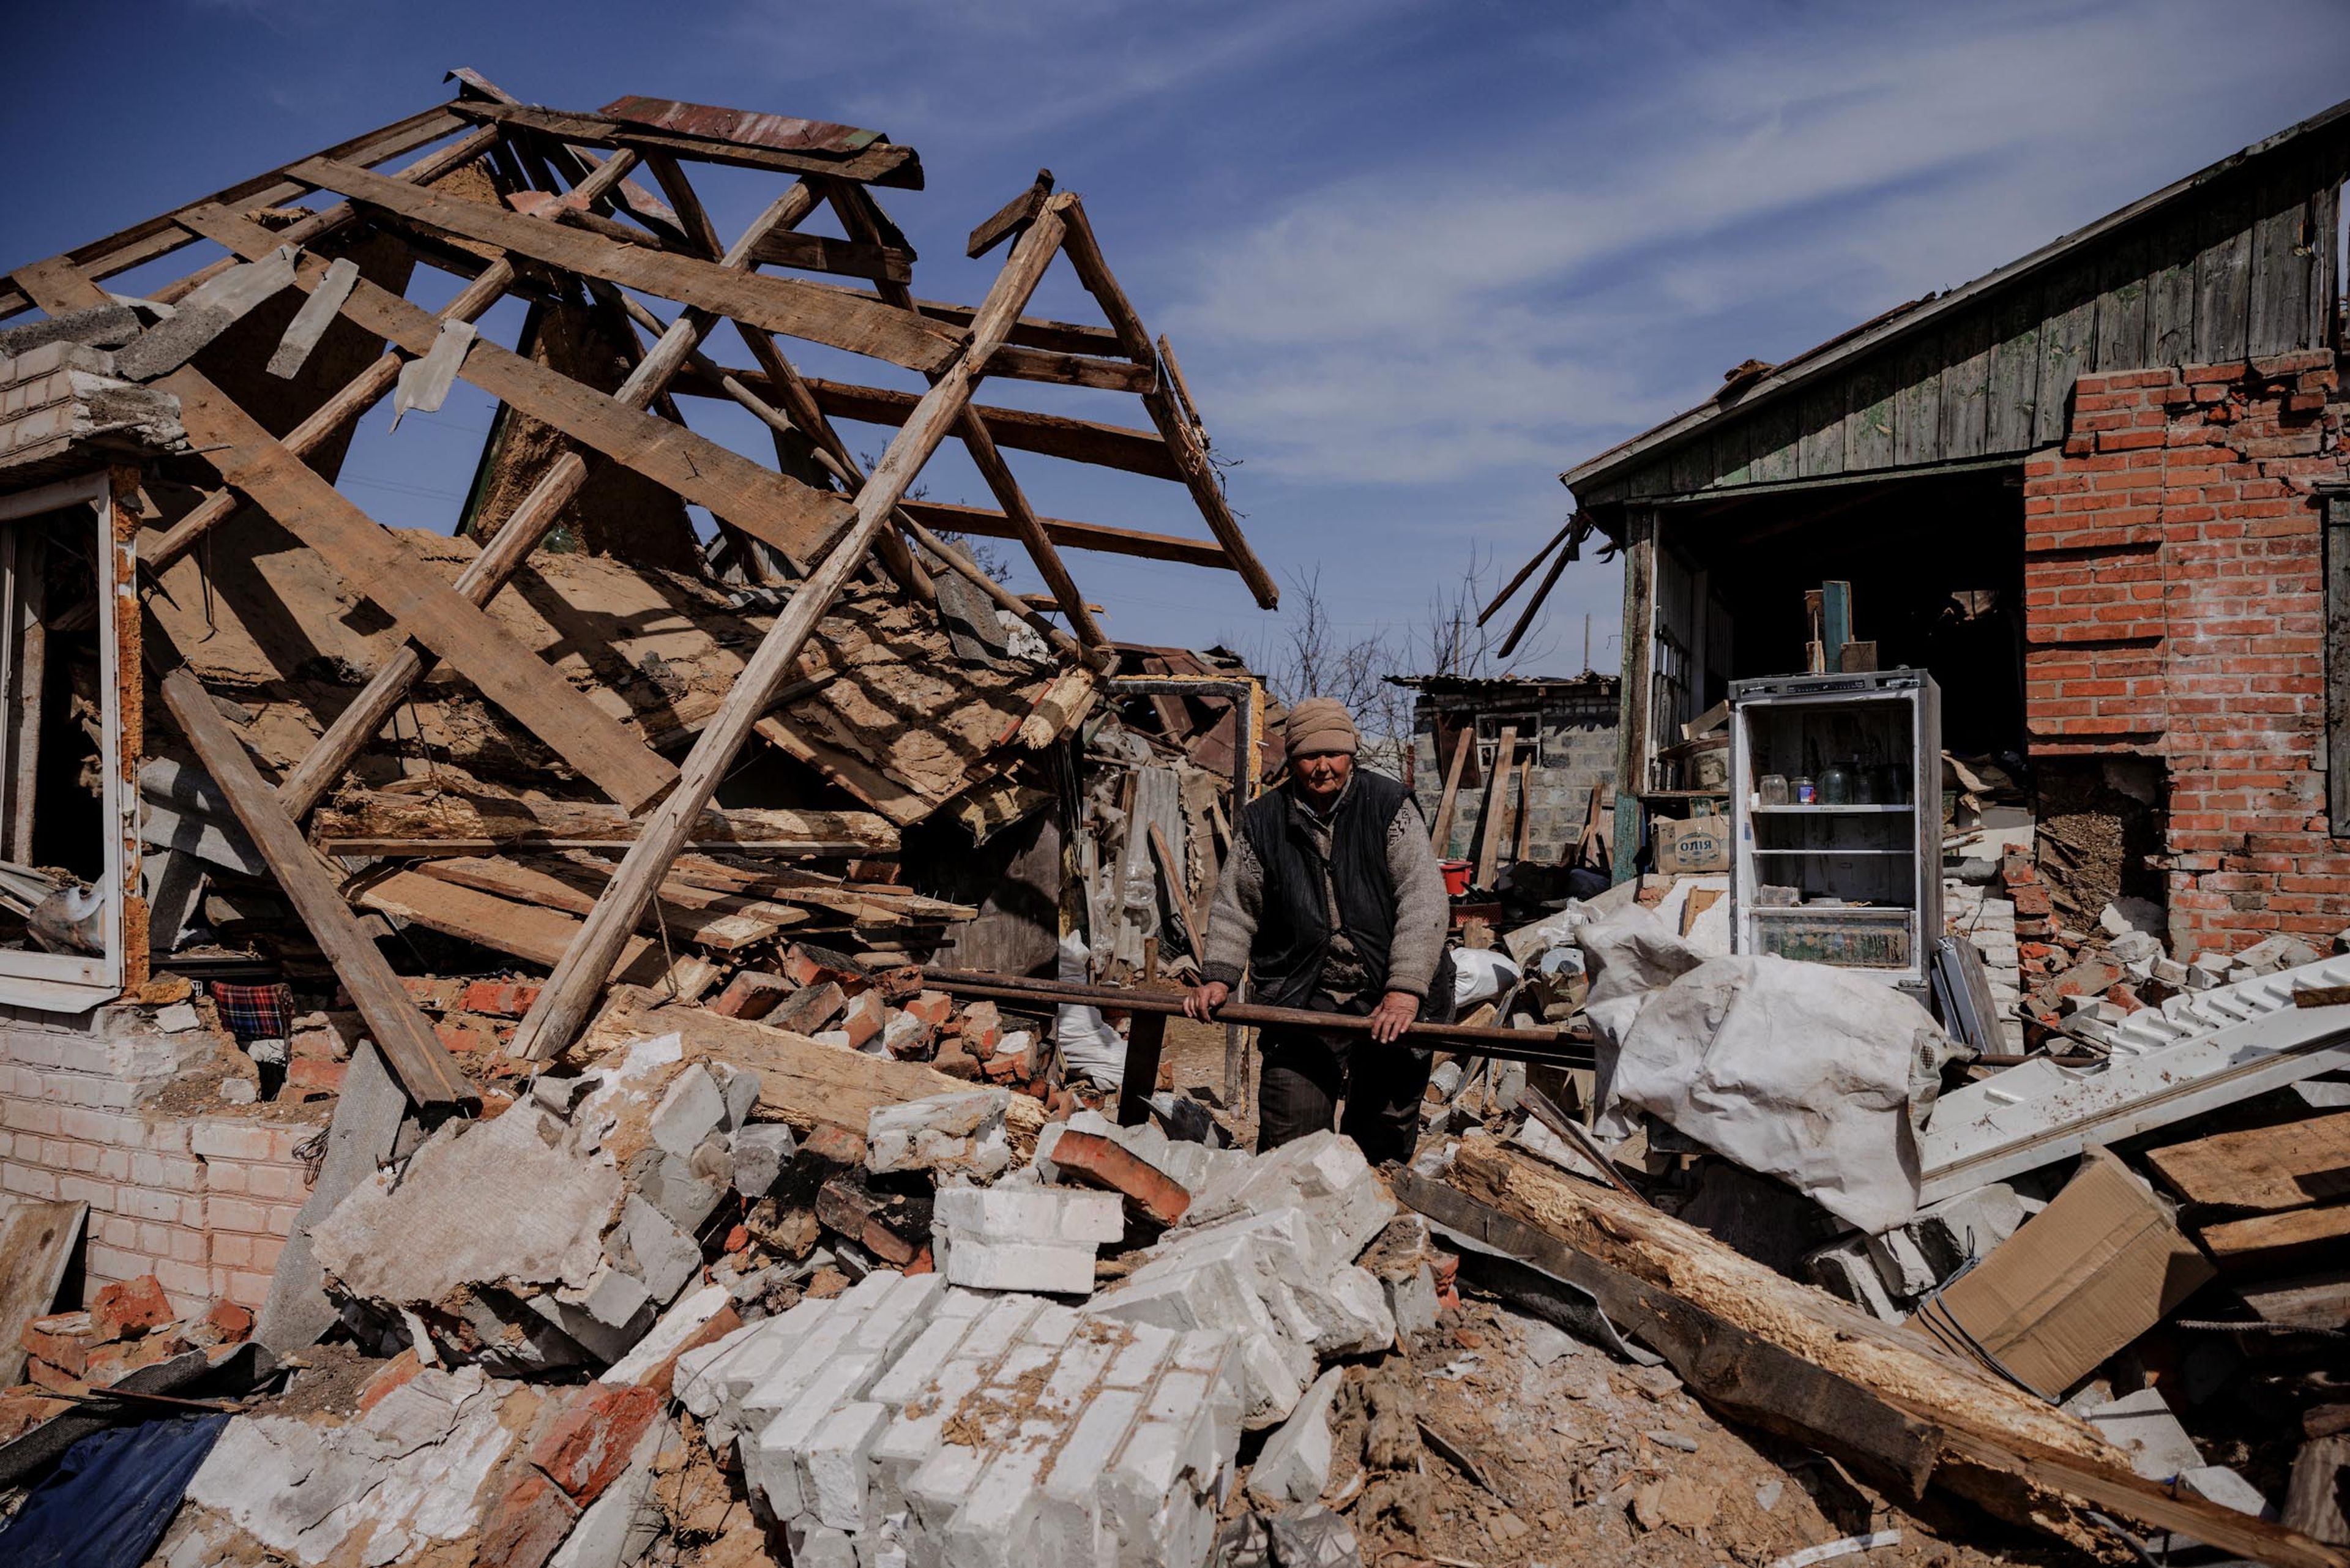 Vera Babenko, granjera de 66 años, delante de la que era su casa, ahora bombardeada, en Járkov (Ucrania).